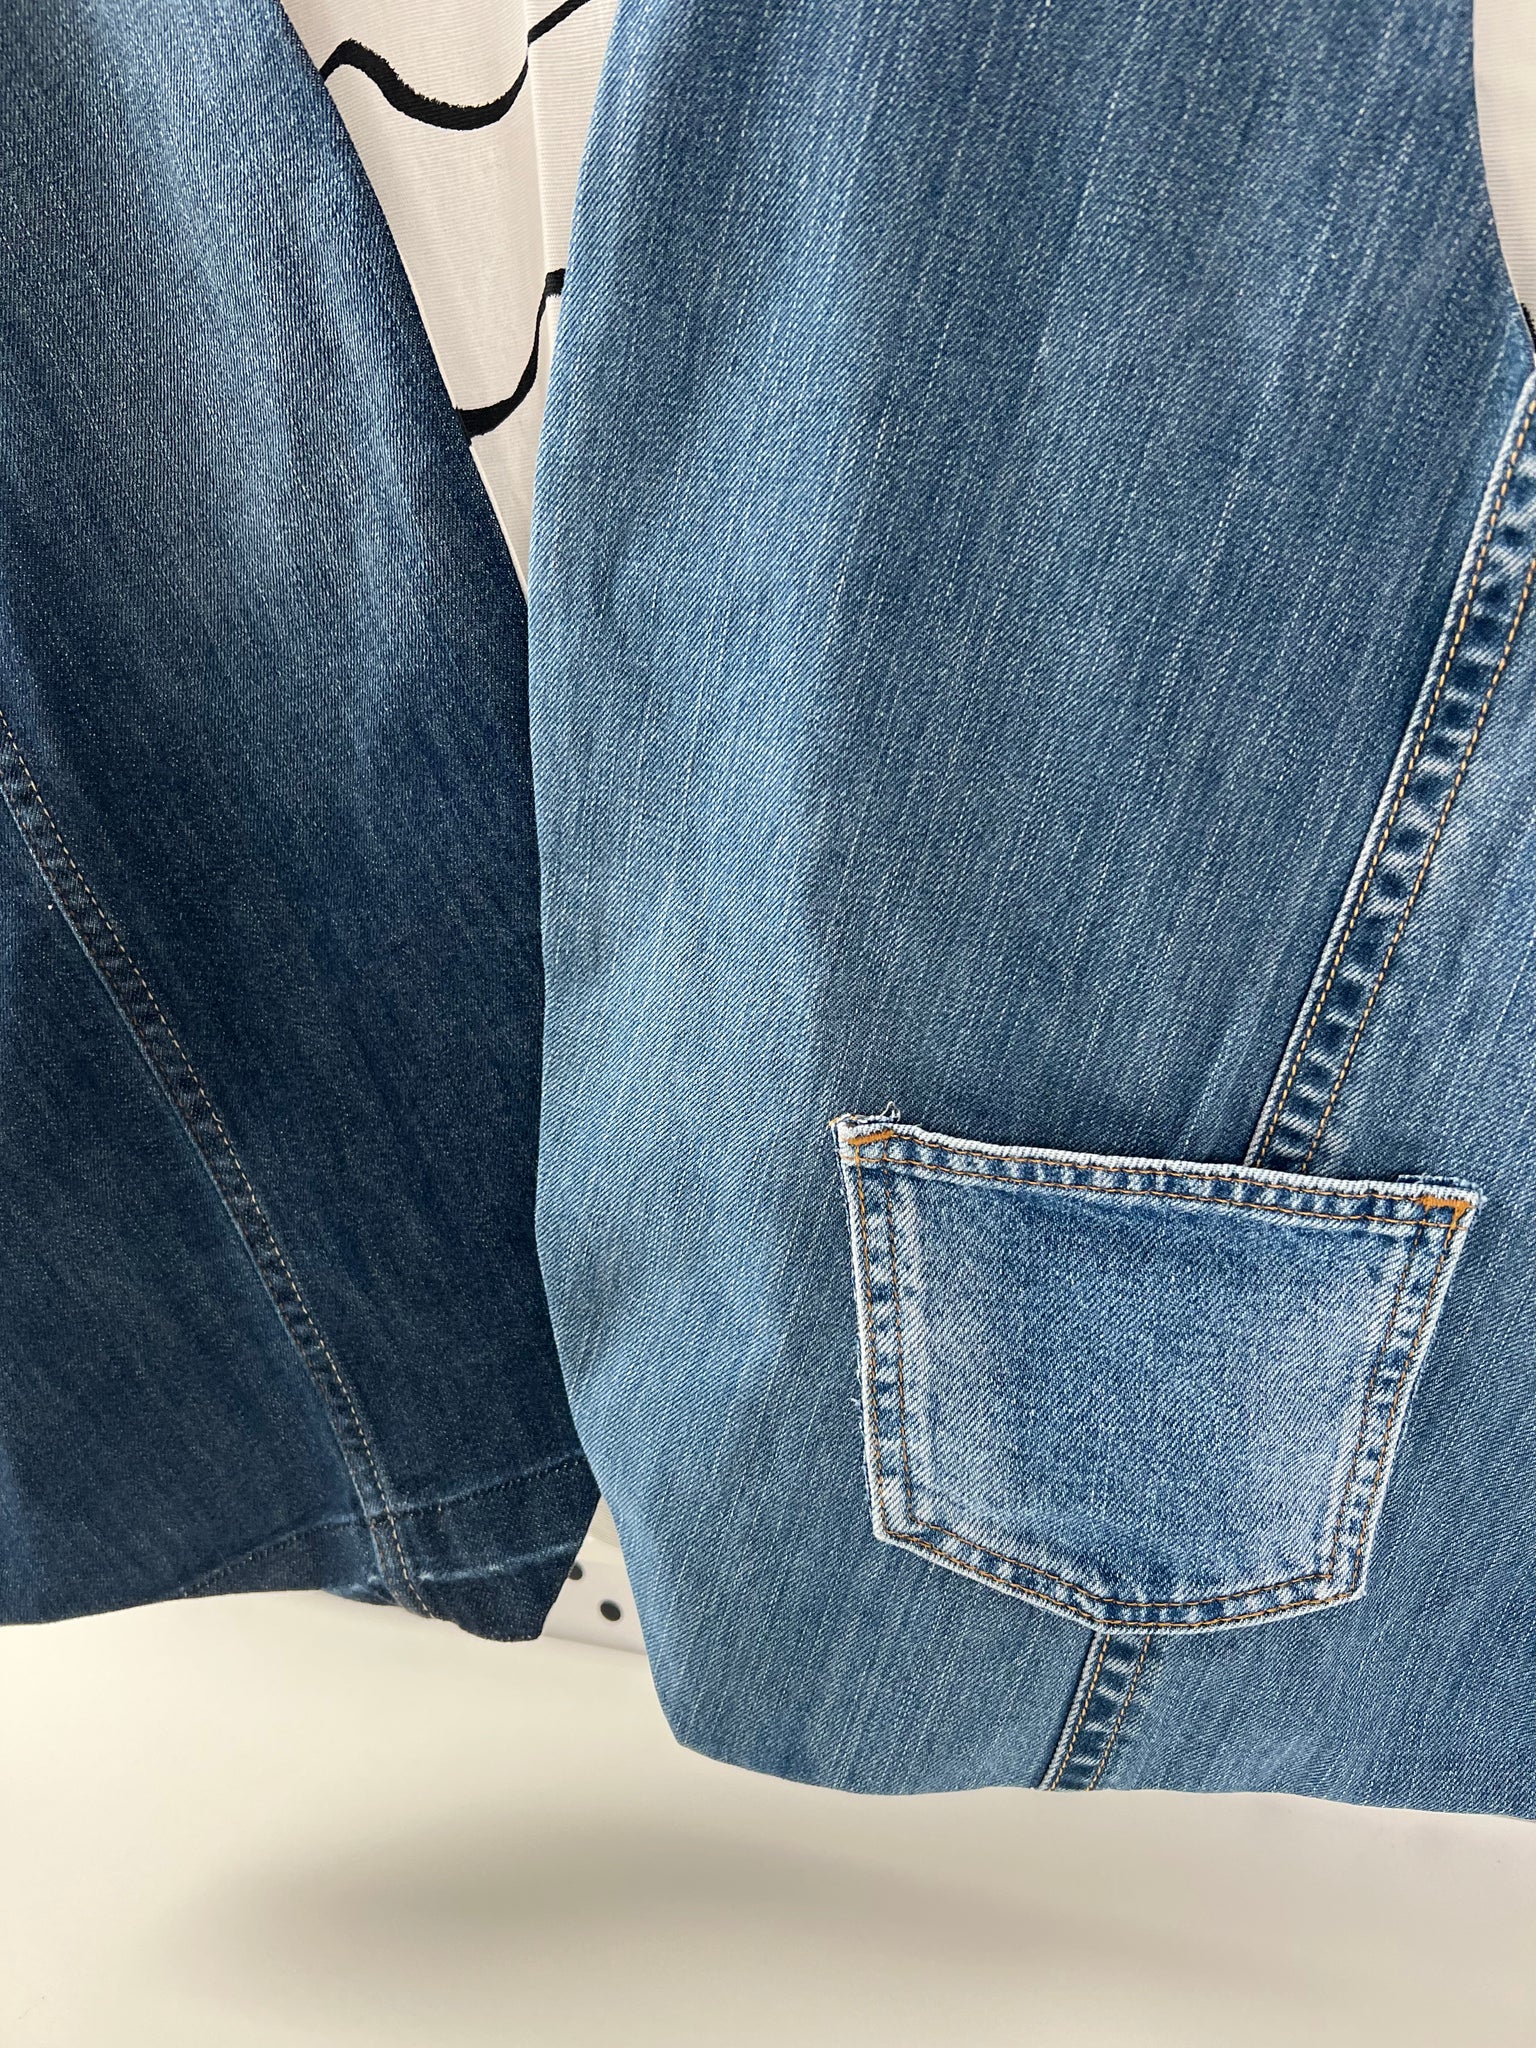 Jeans gilet #3 - 2XL/3XL